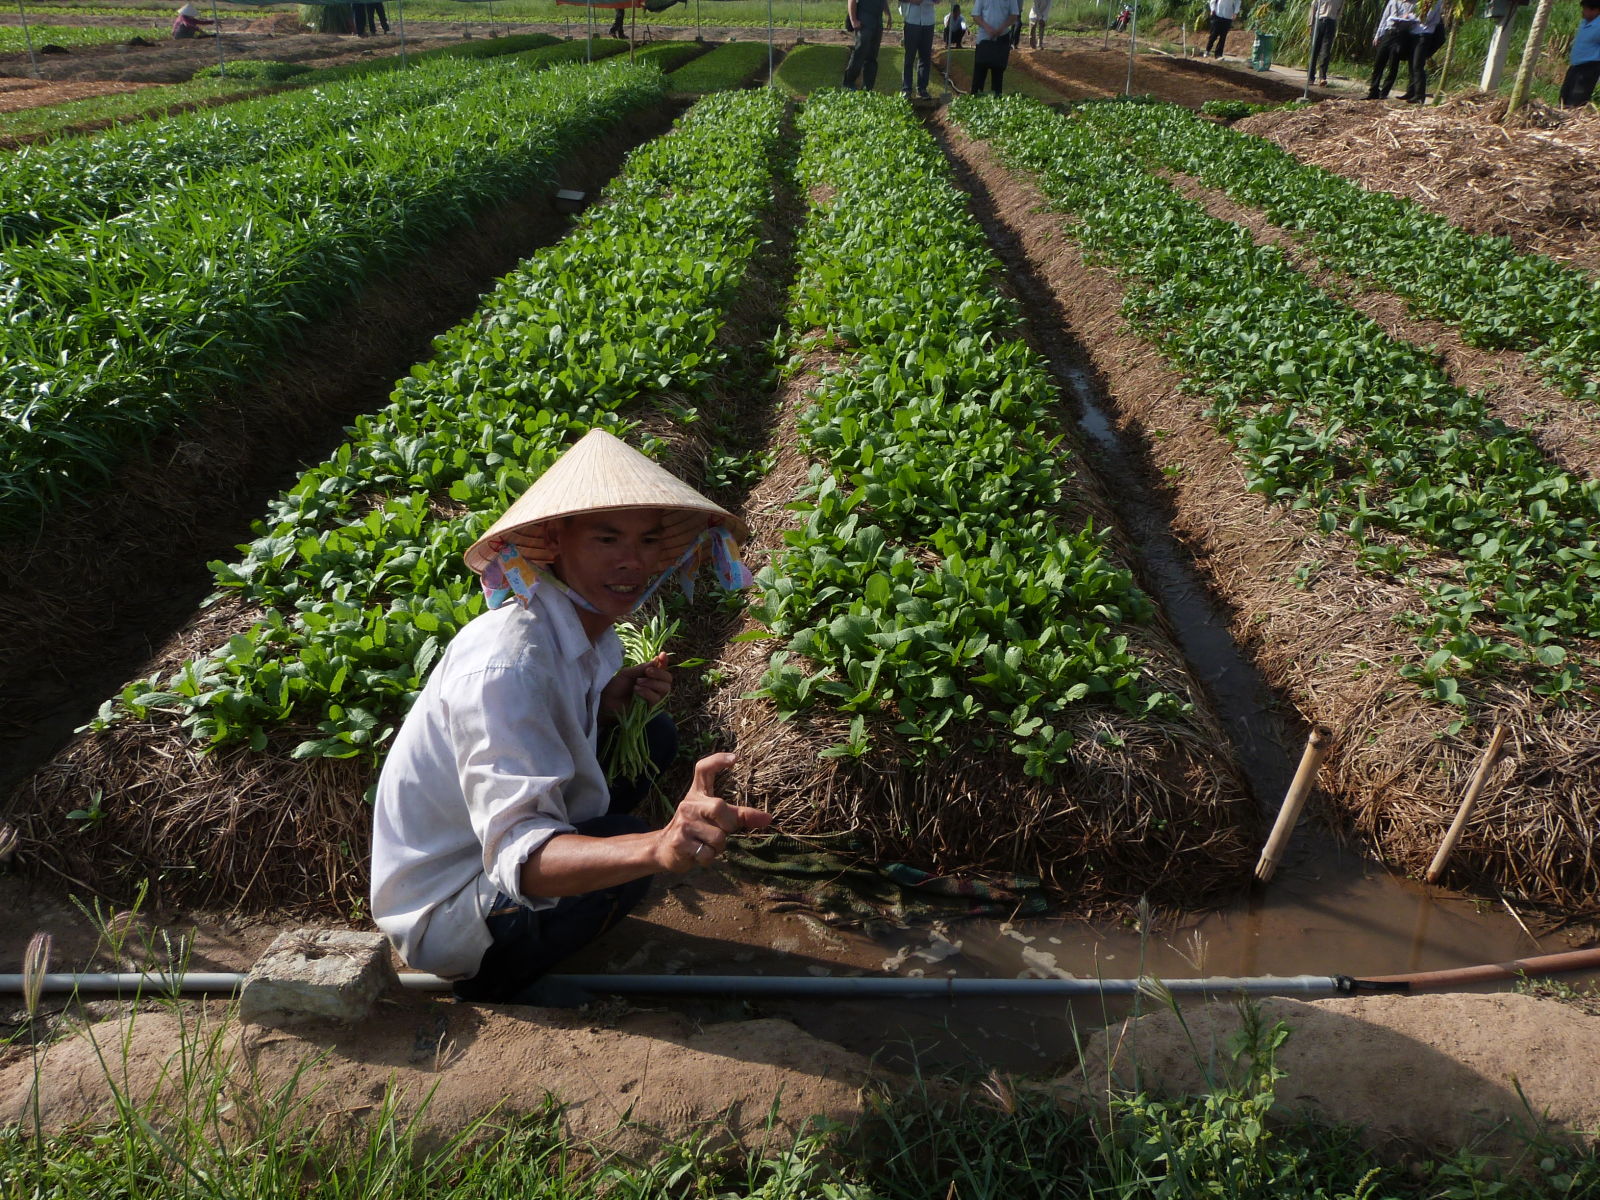 Safer veges in Viet Nam